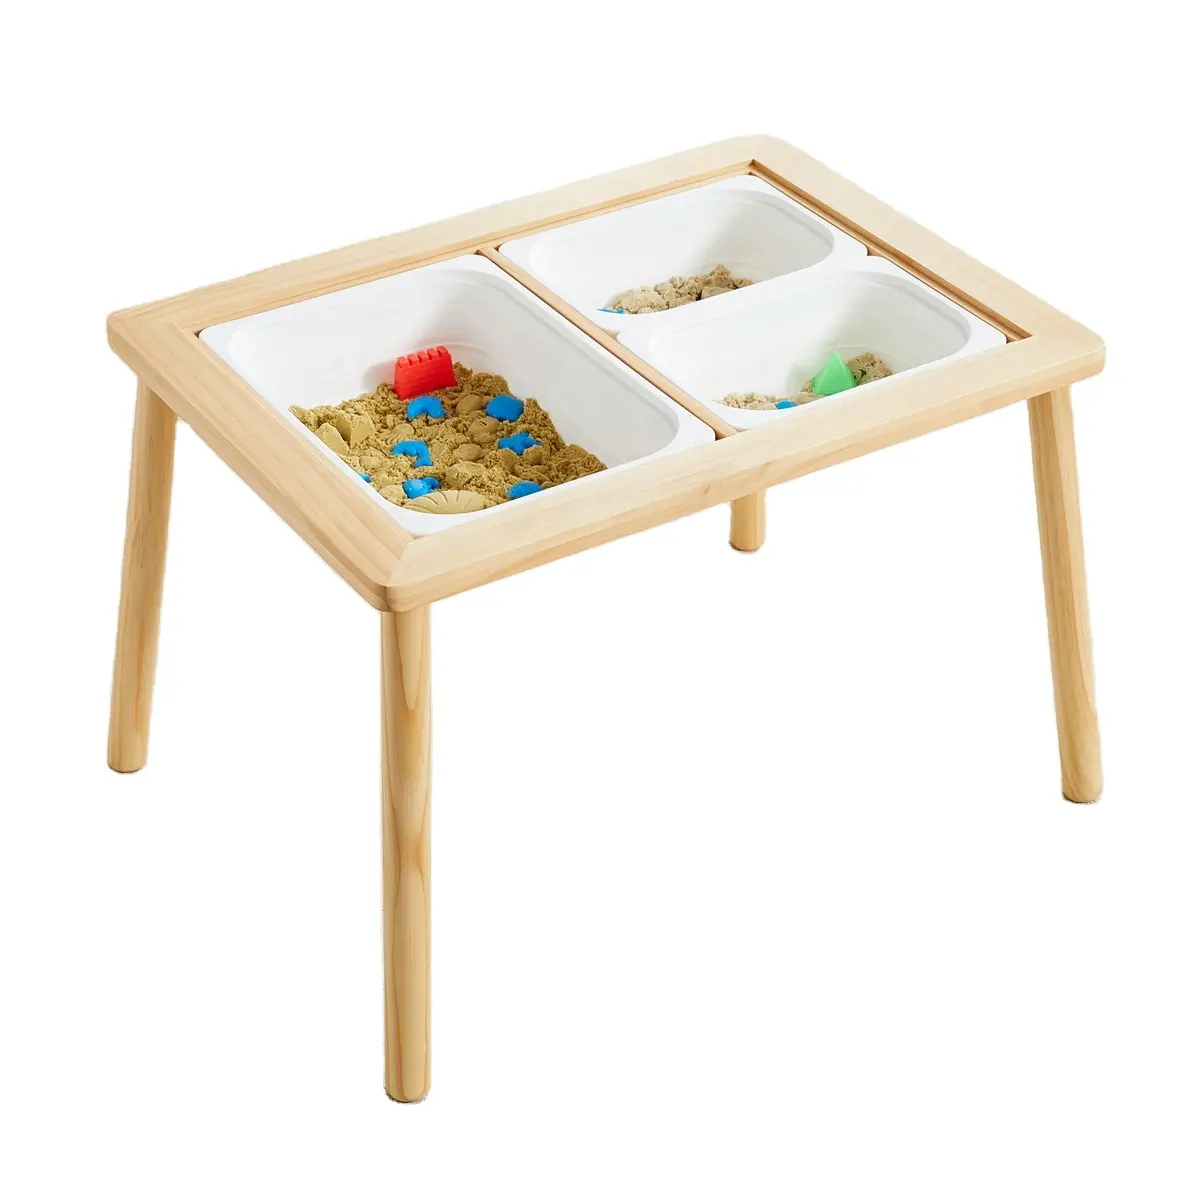 أثاث لعب خشبي للأطفال للأماكن الداخلية والخارجية طاولة لعب مونتيسوري بالرمال وطاولة حسية مائية للأطفال